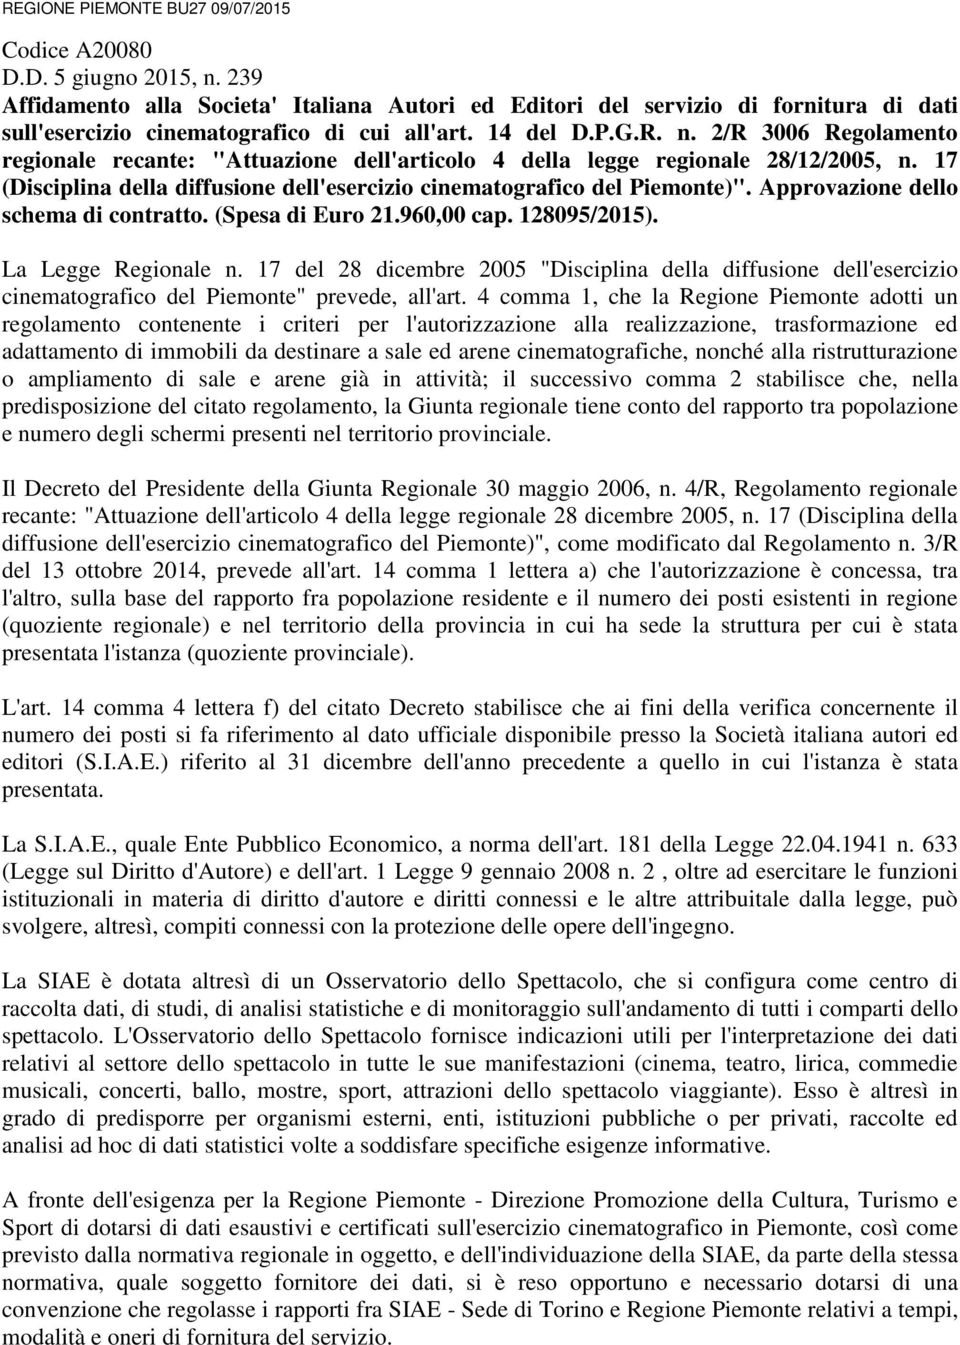 2/R 3006 Regolamento regionale recante: "Attuazione dell'articolo 4 della legge regionale 28/12/2005, n. 17 (Disciplina della diffusione dell'esercizio cinematografico del Piemonte)".